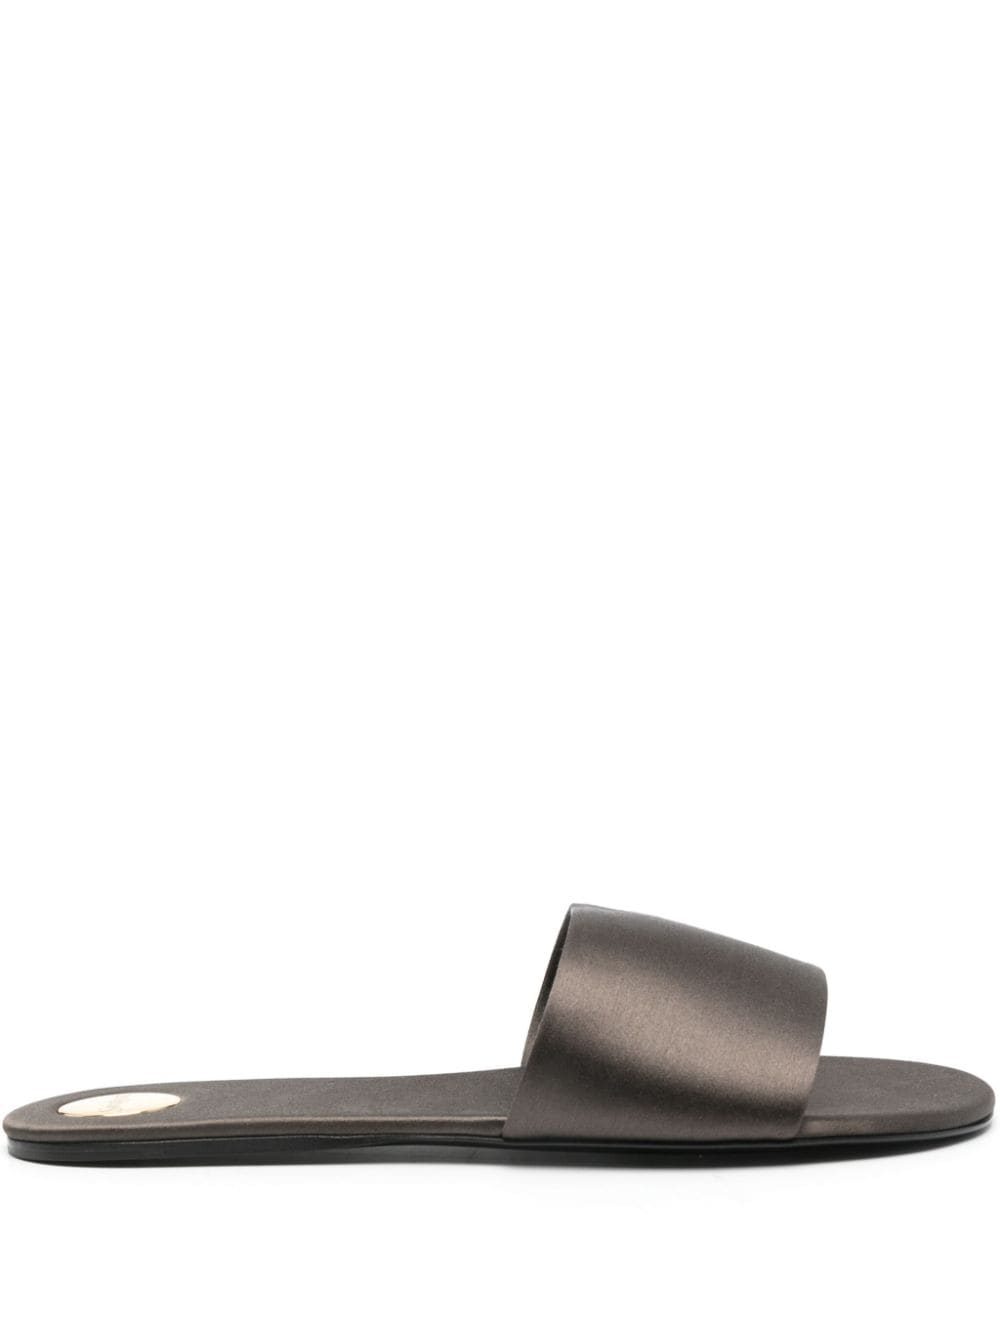 Saint Laurent Carlyle satin flat sandals - Grey von Saint Laurent